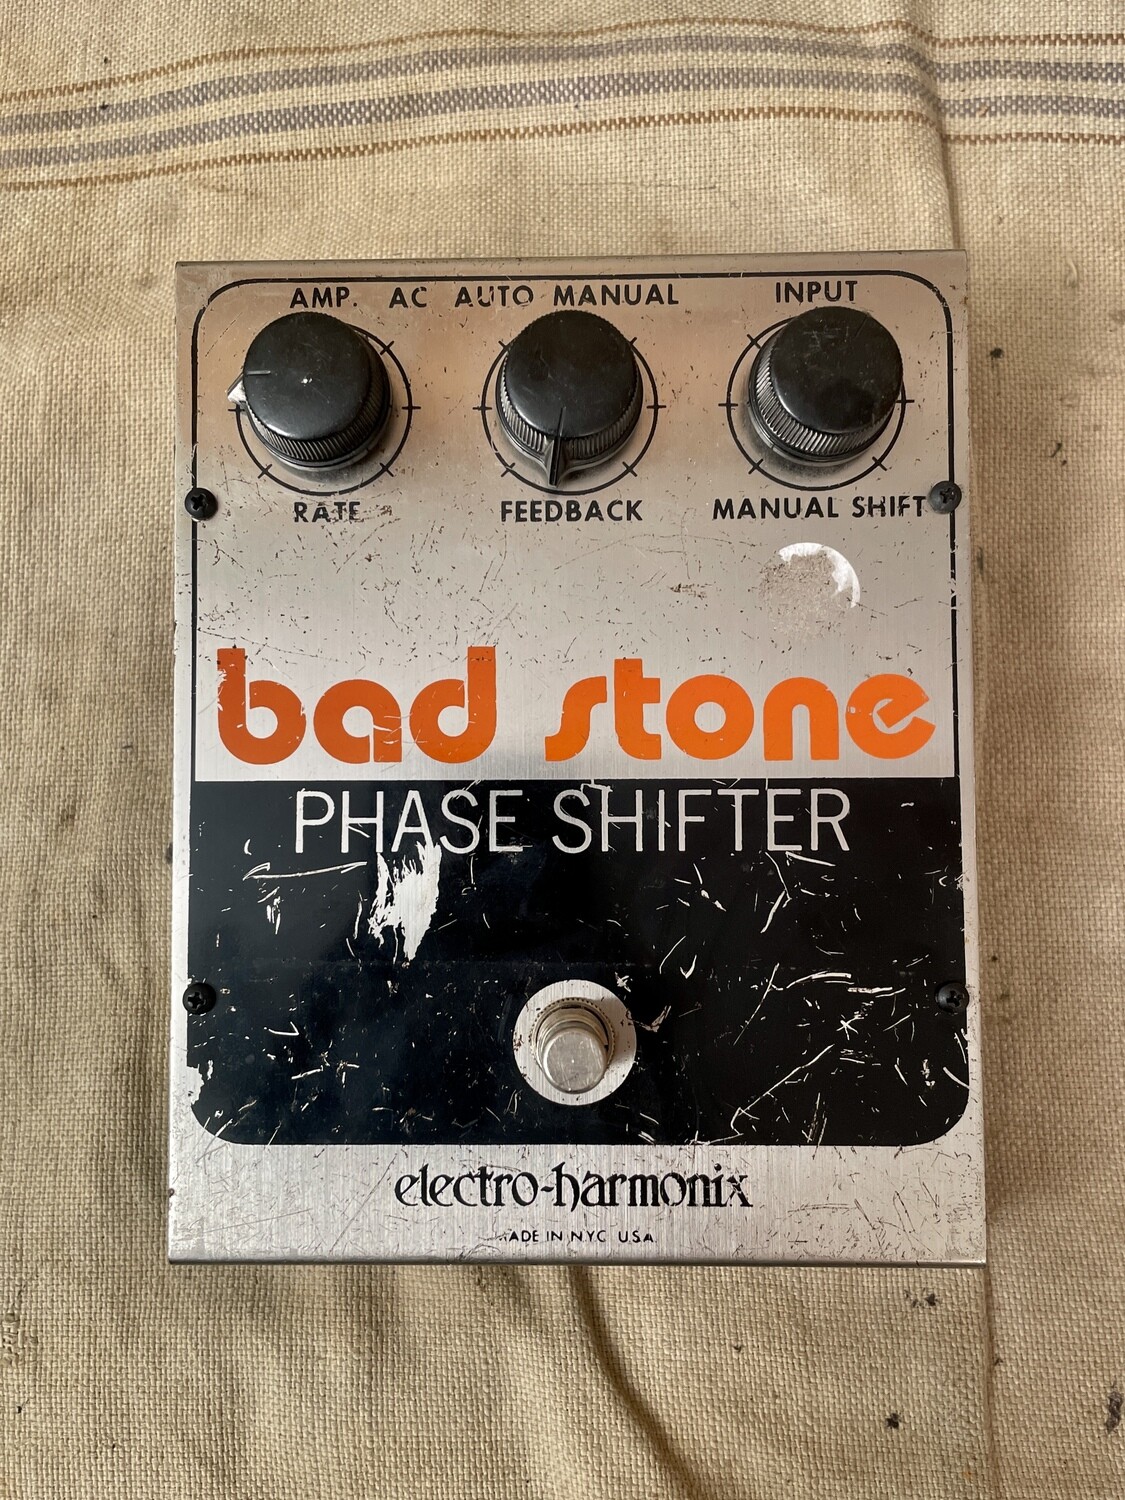 1975 Electro Harmonix Bad Stone Phase Shifter